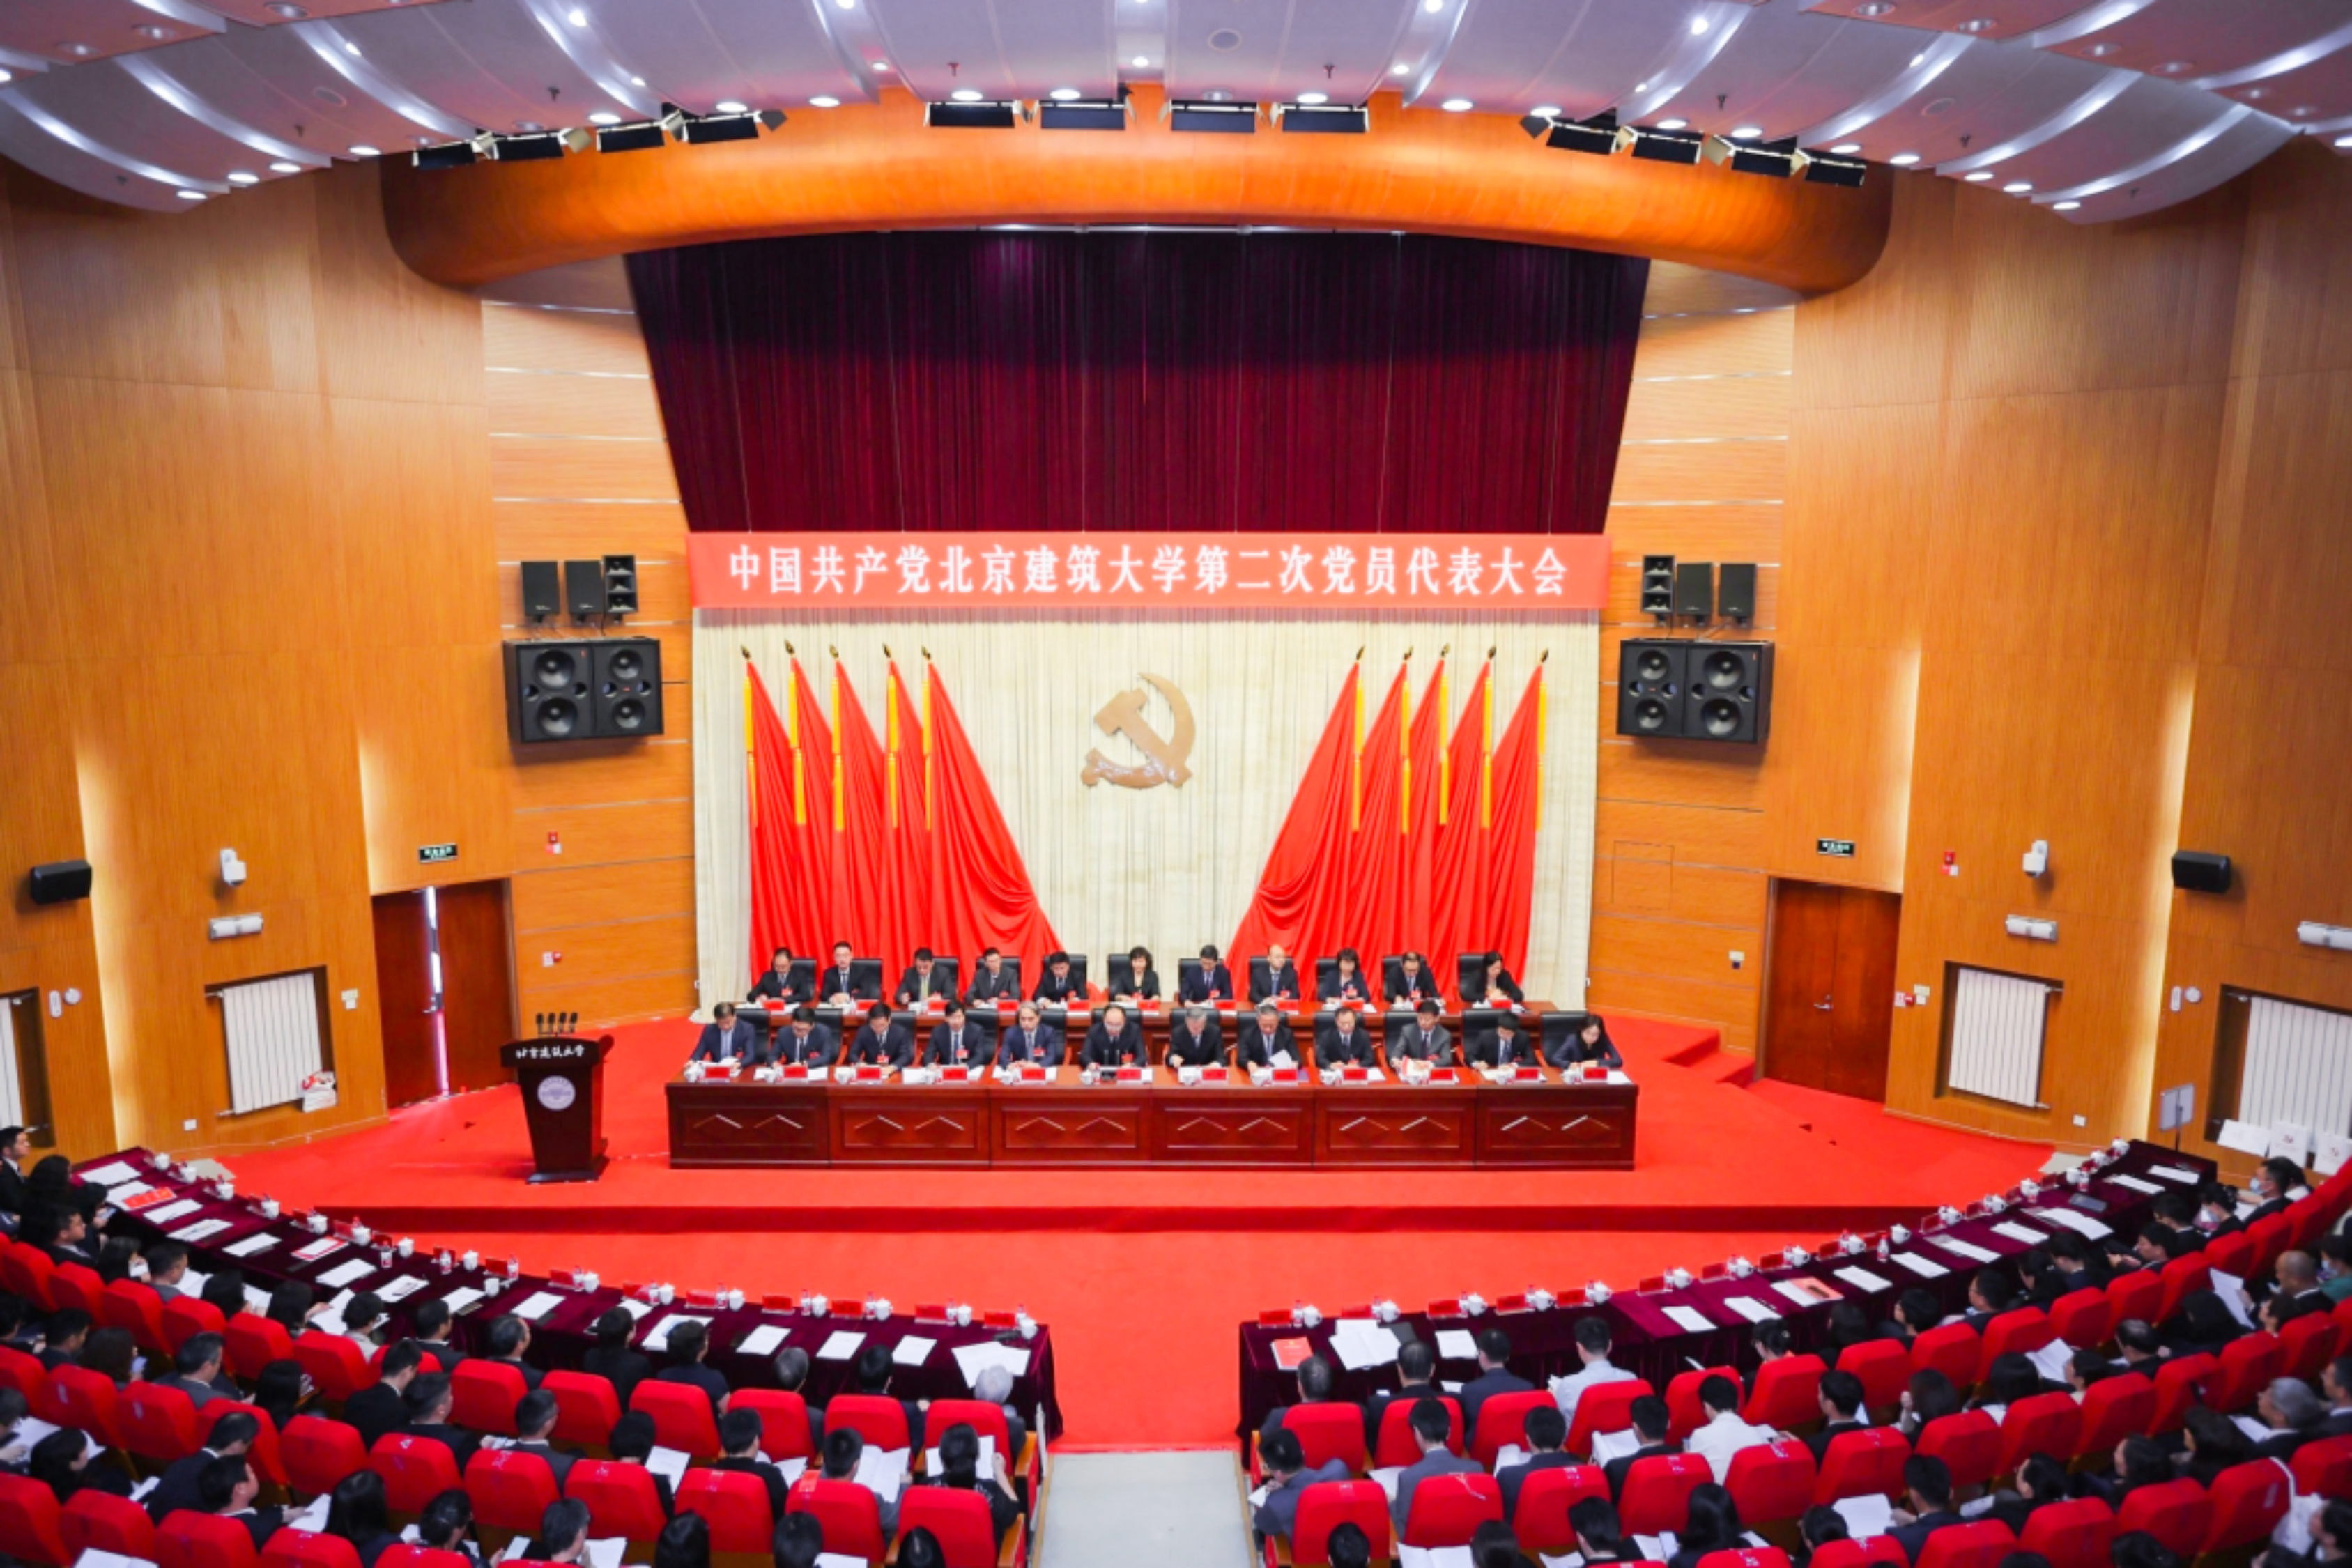 接续奋斗，勇毅前行！中国共产党北京建筑大学第二次党员代表大会胜利召开